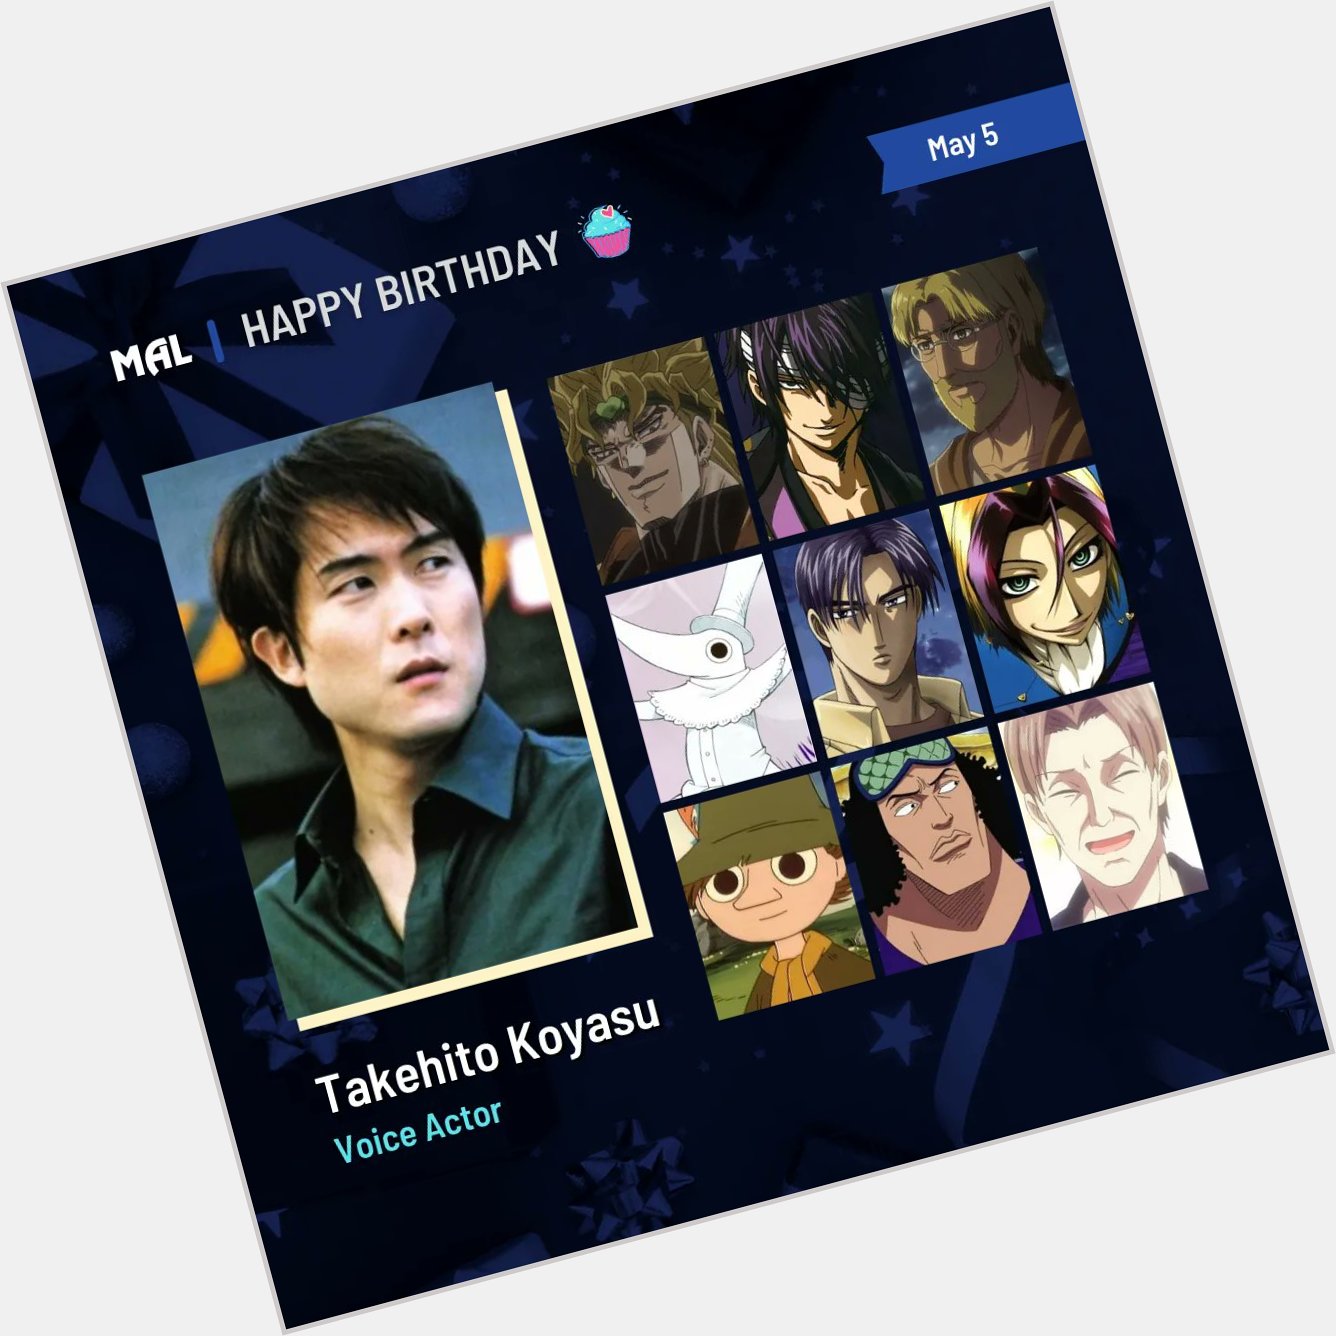 Happy Birthday to Takehito Koyasu! Full profile:  